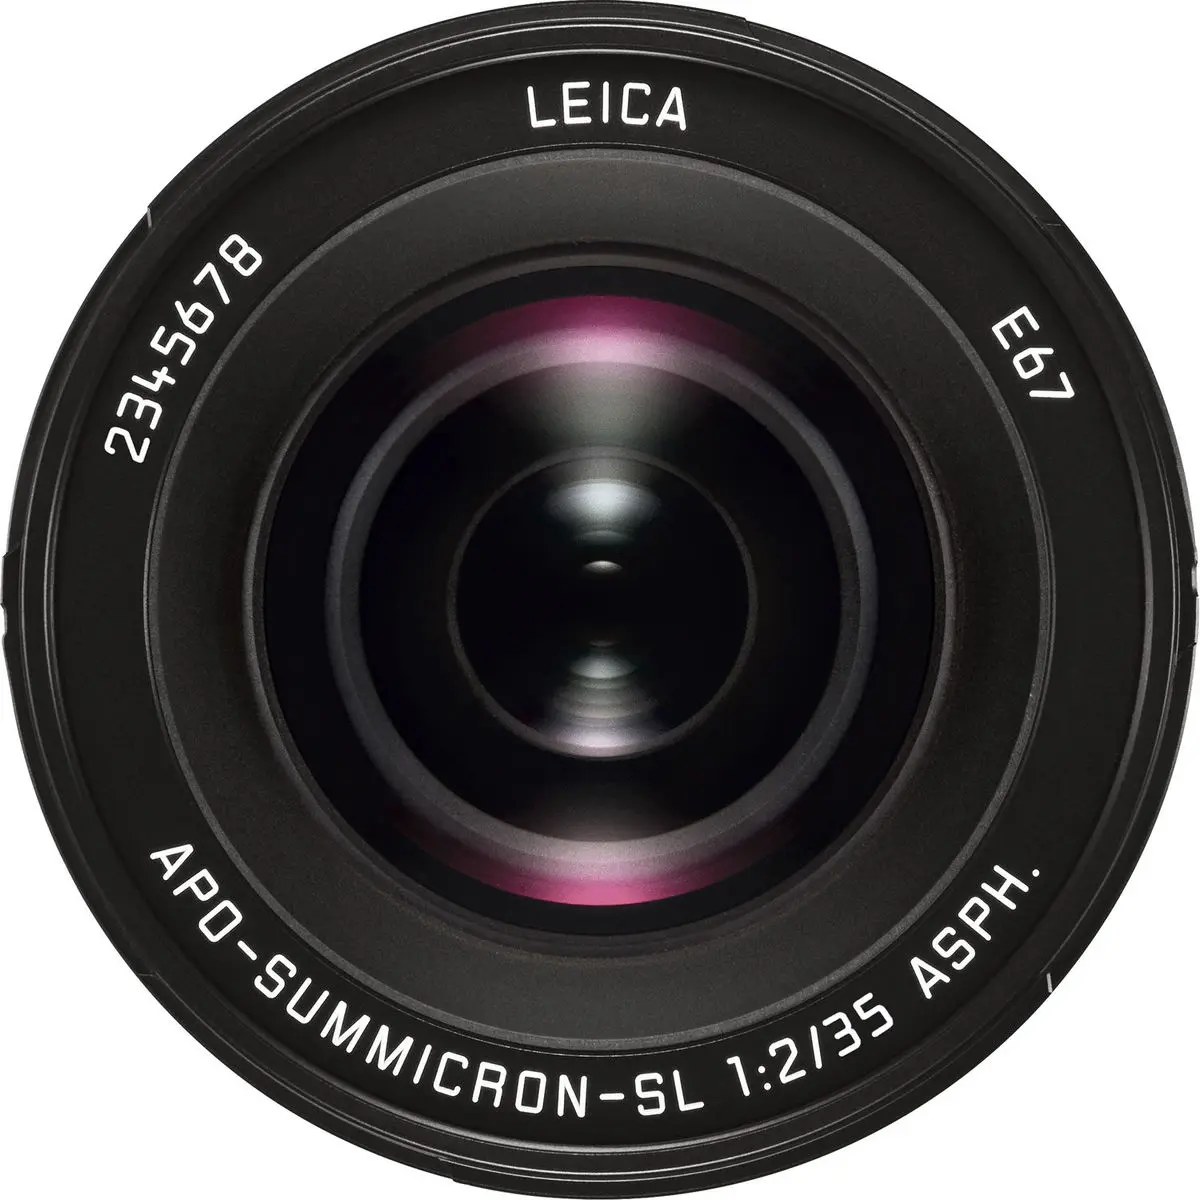 3. Leica APO-Summicron-SL 35mm f/2 Asph. Lens